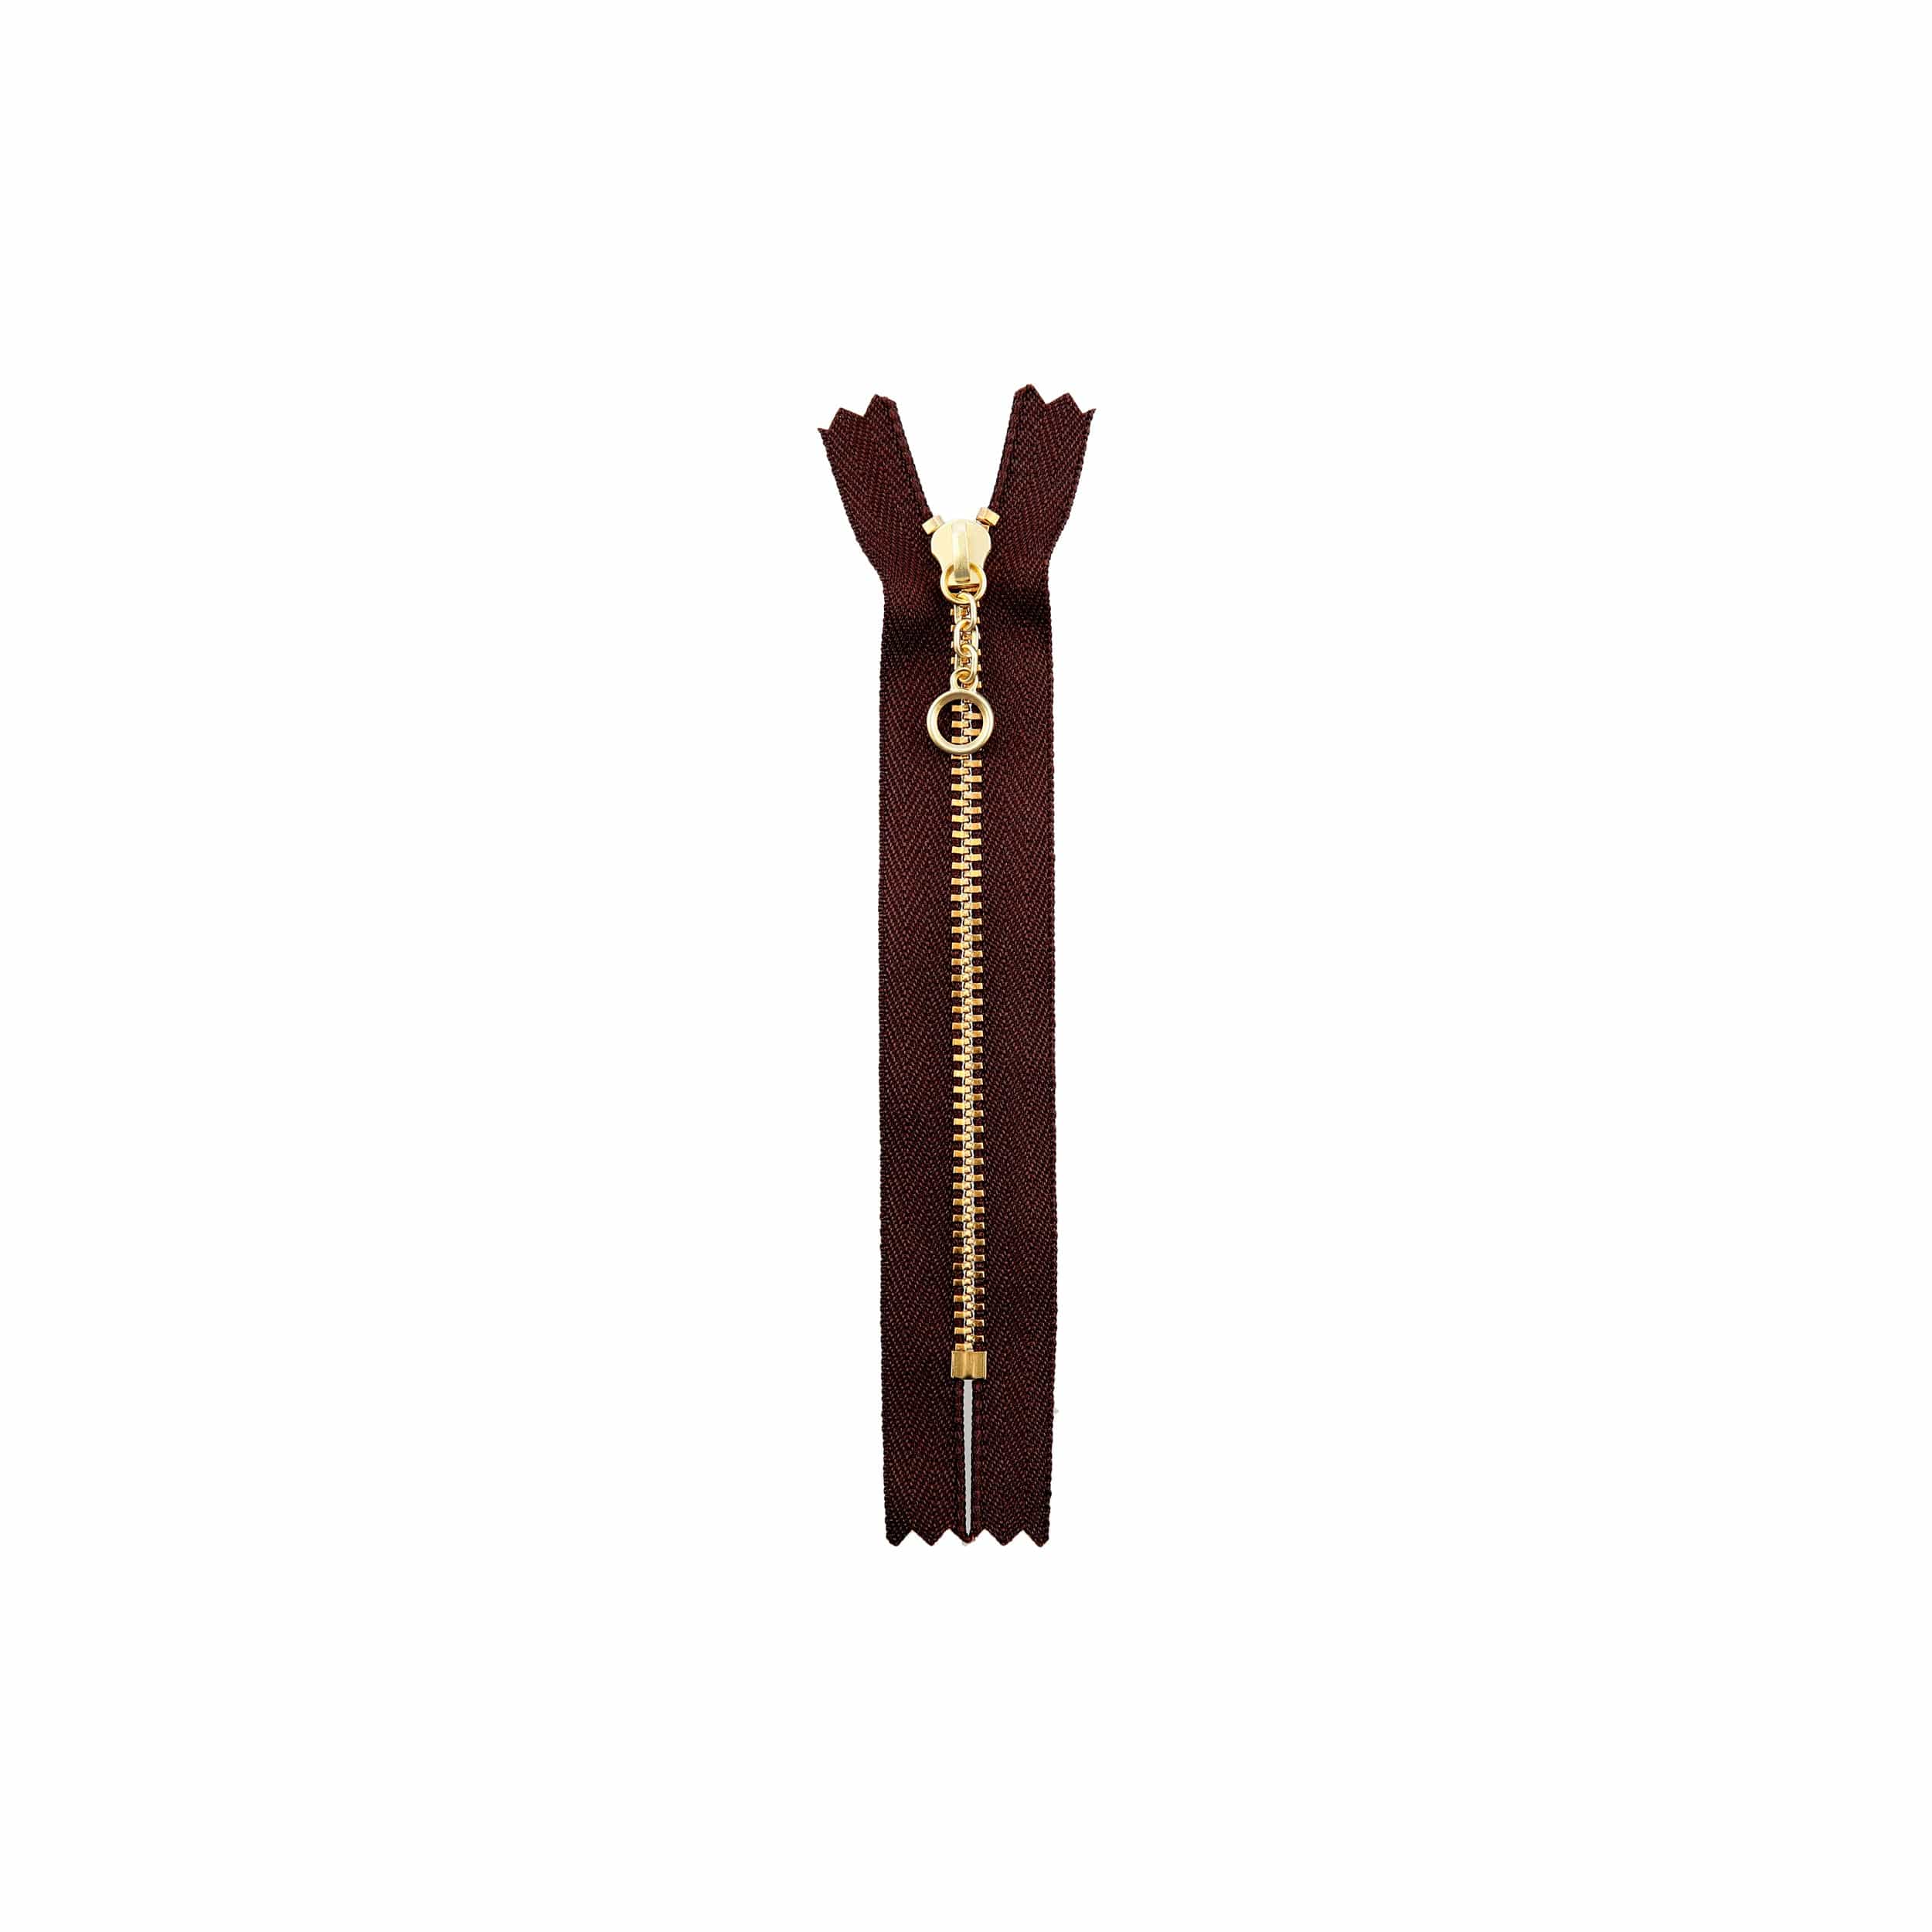 Ohio Travel Bag Zippers 5" Brown with Brass, Handbag Zipper, Metal, #451-5-BRO 451-5-BRO